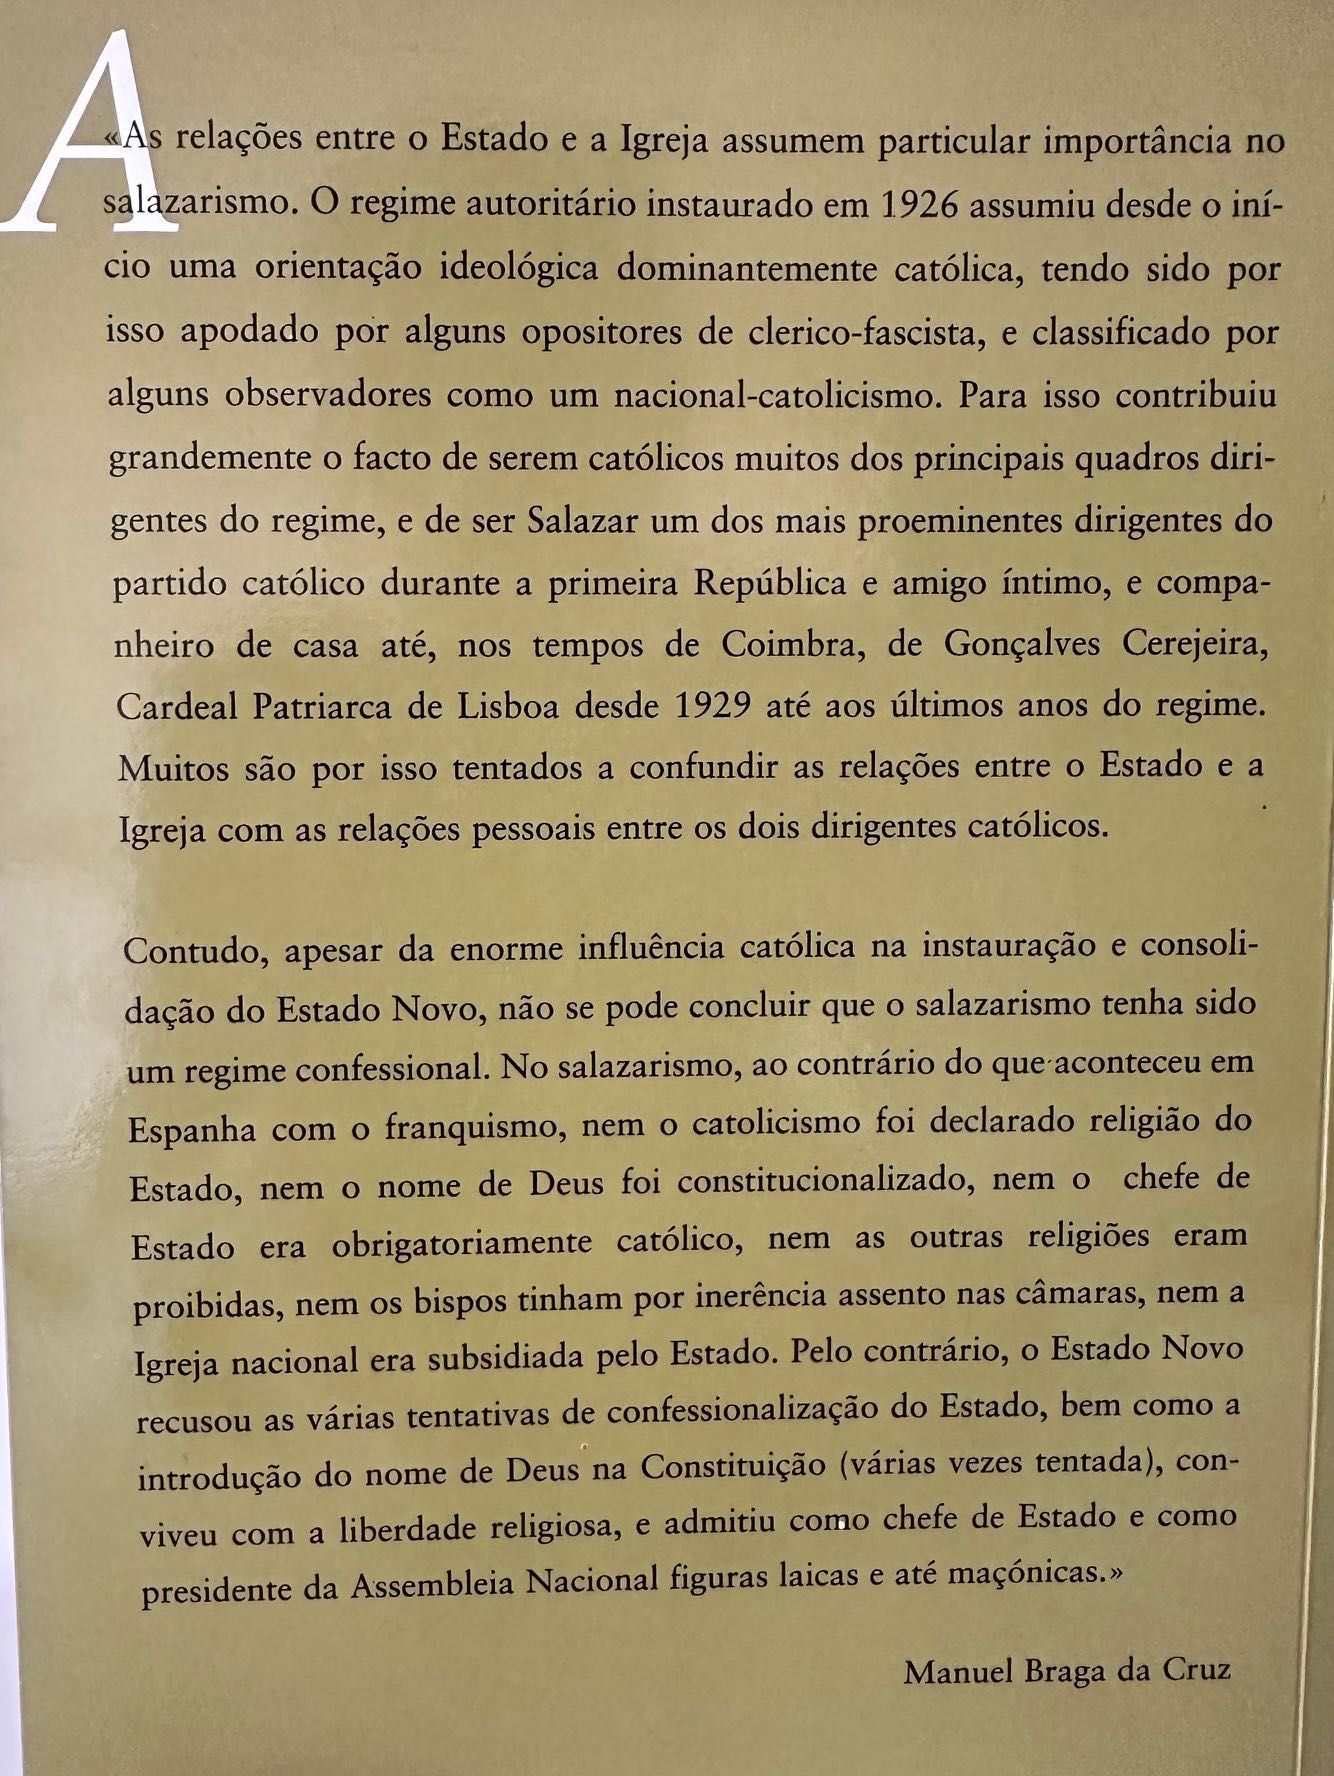 O Estado Novo e a Igreja Católica - Manuel Braga da Cruz - 1999